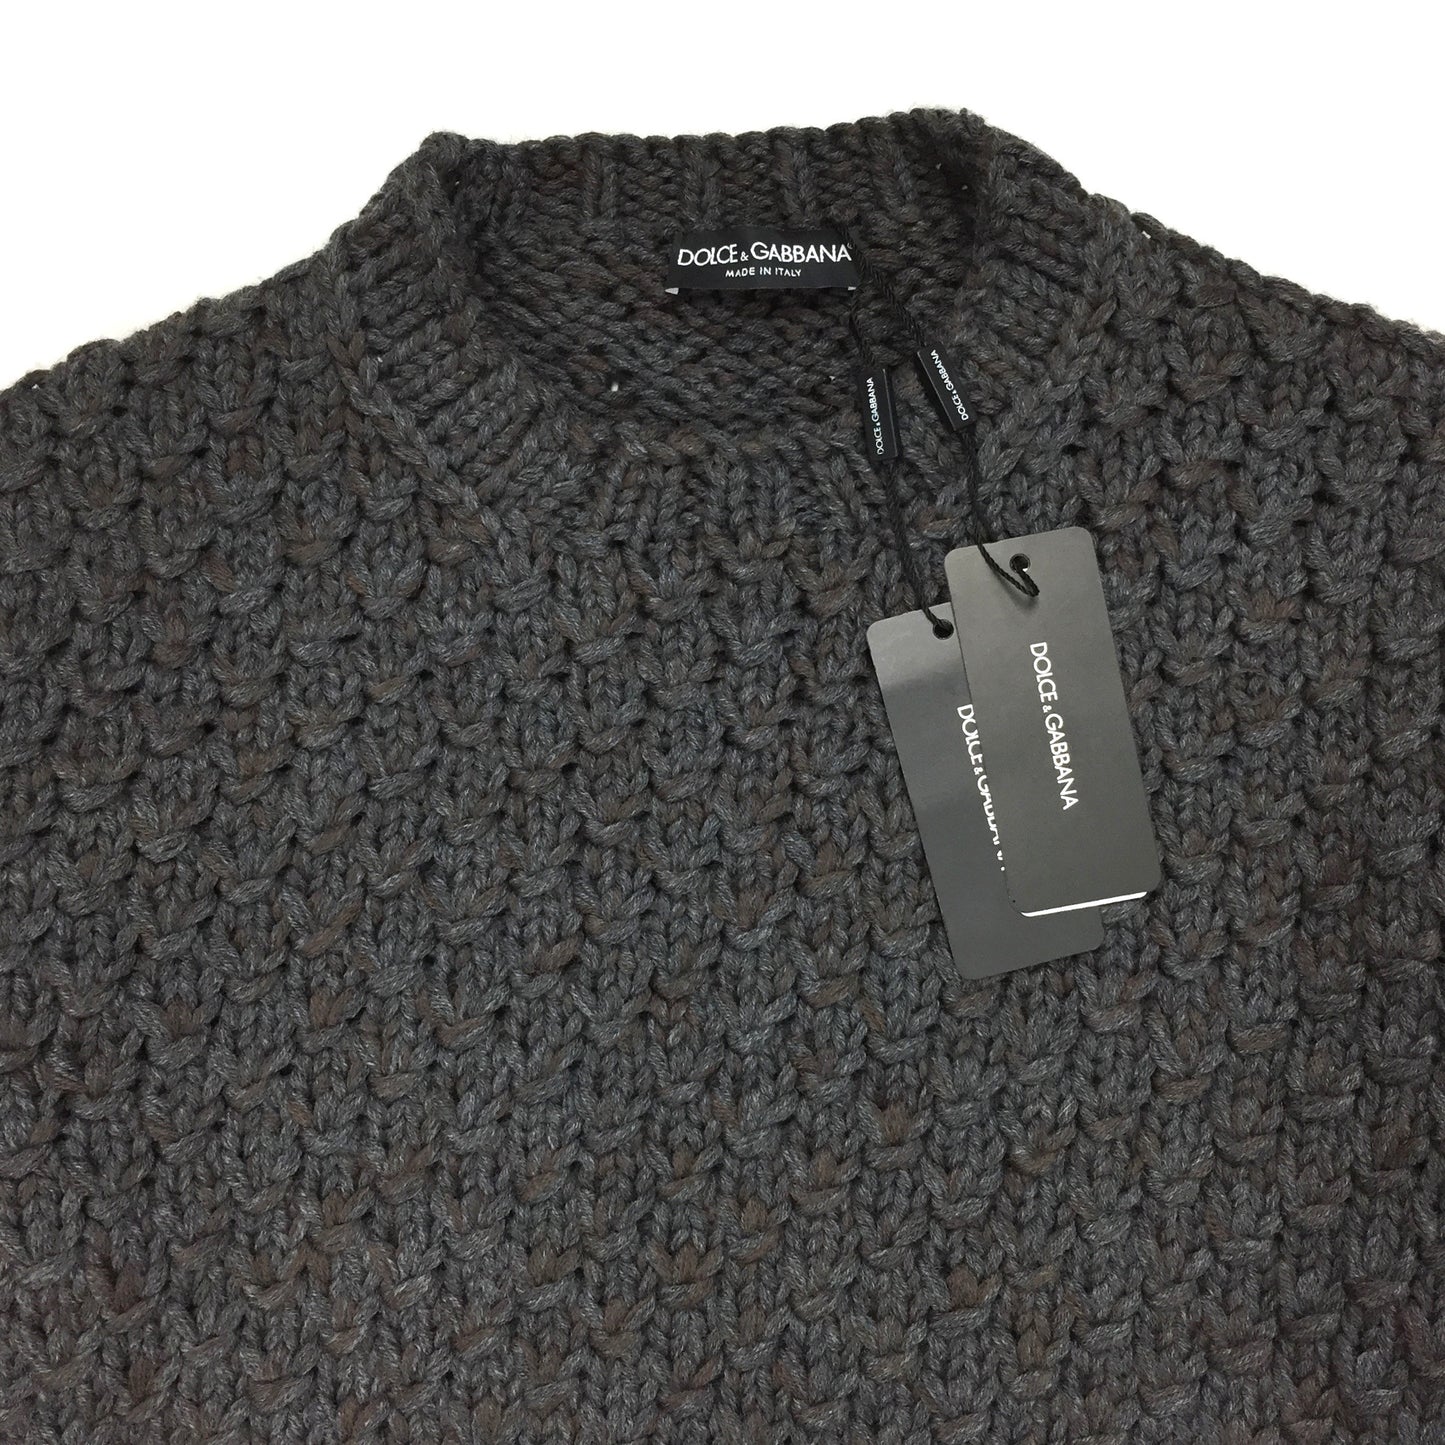 Dolce & Gabbana - Chain Mail Heavy Knit Sweater